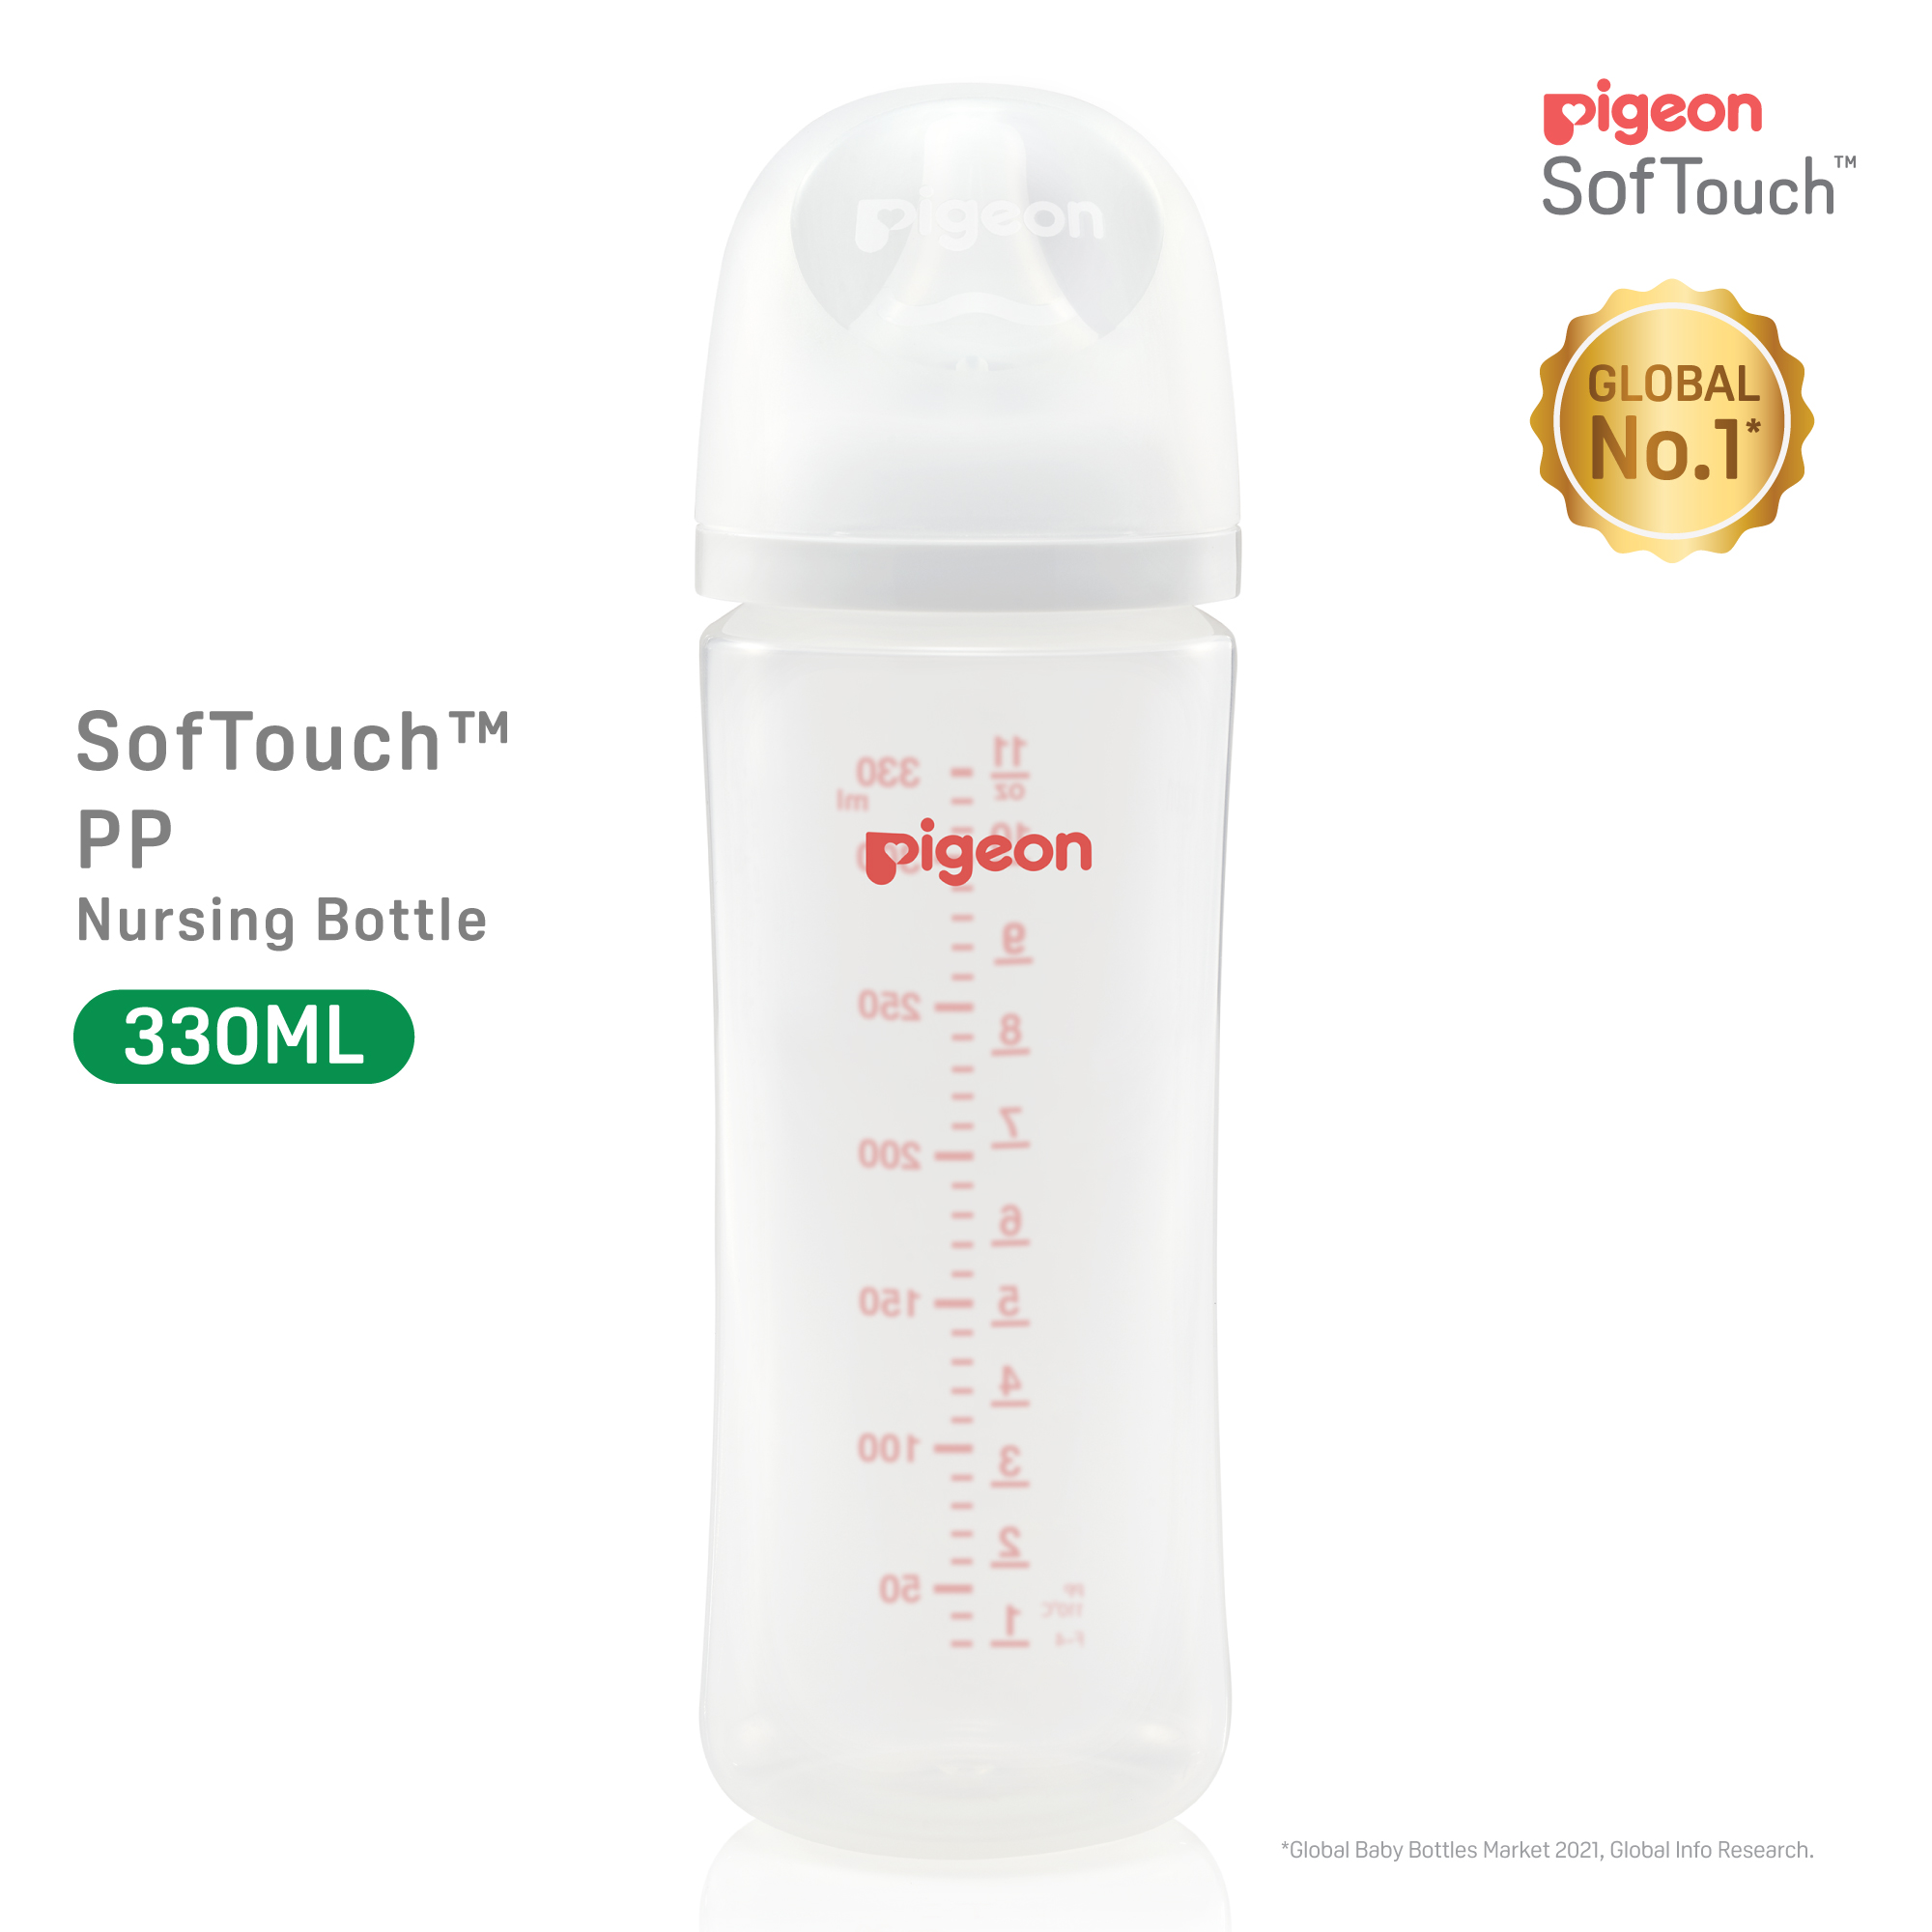 Pigeon SofTouch 3 Nursing Bottle PP 330ml Logo (PG-79454)